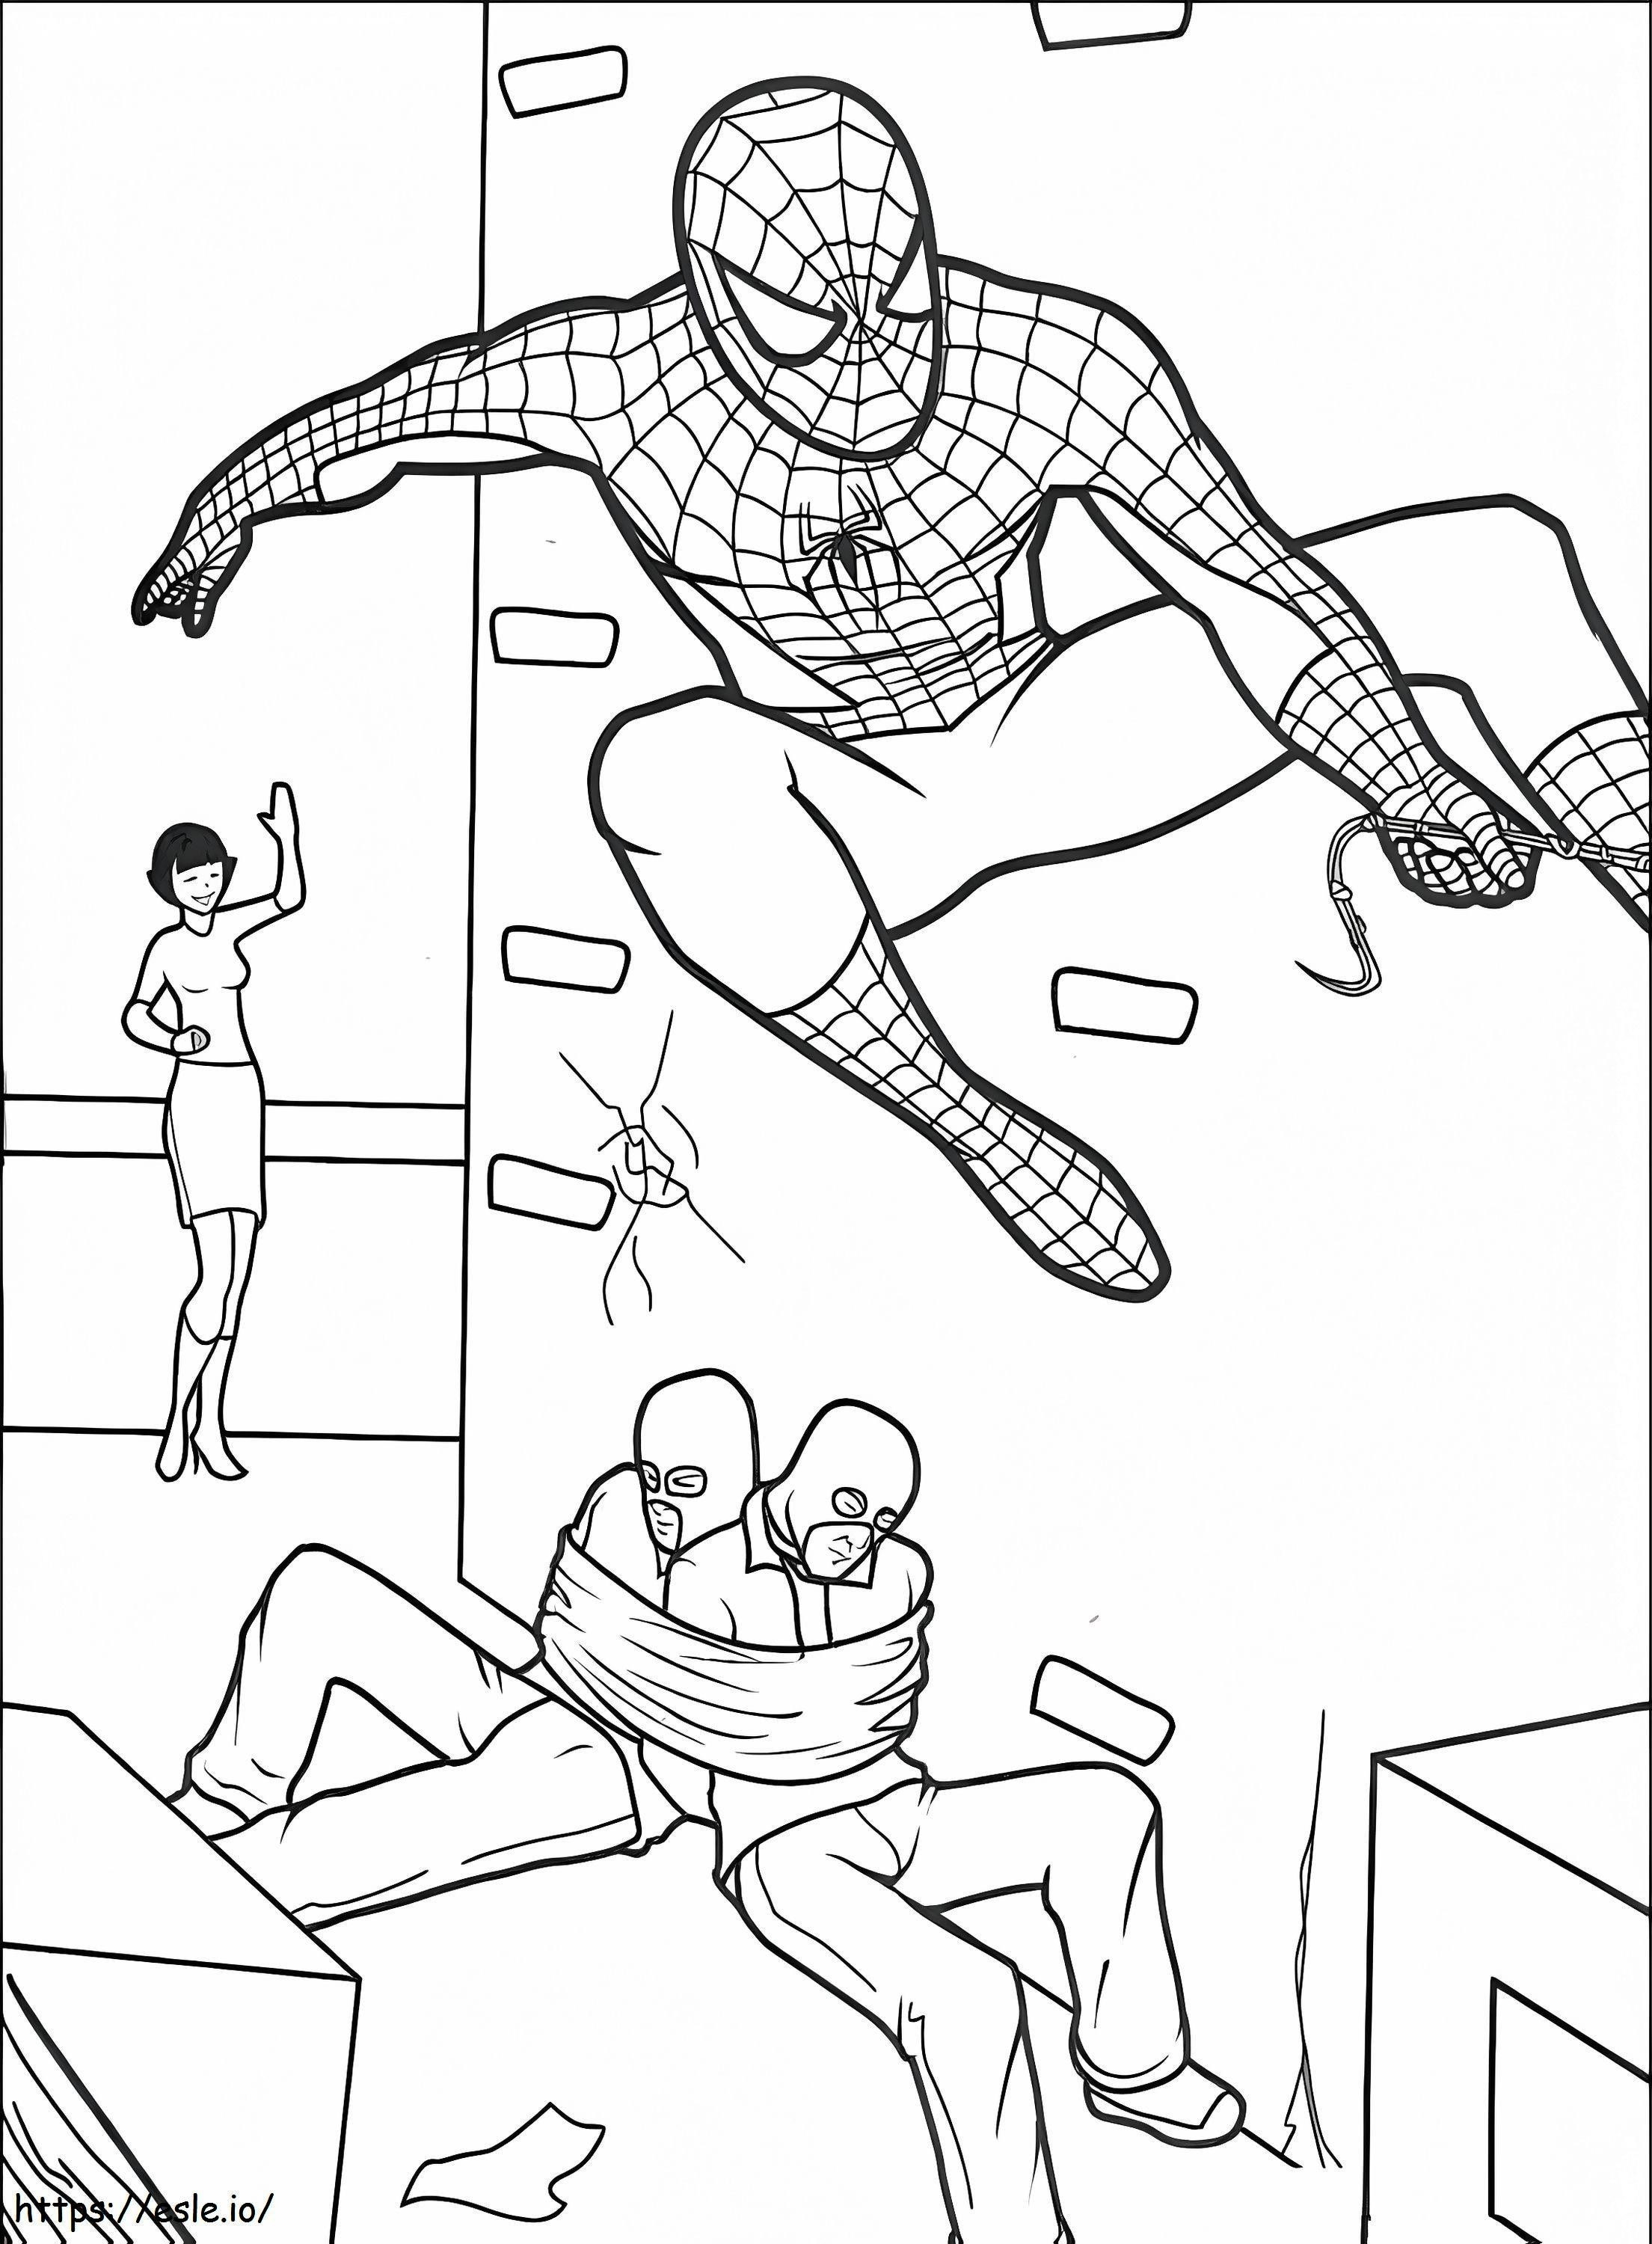 Homem-Aranha salva o dia para colorir